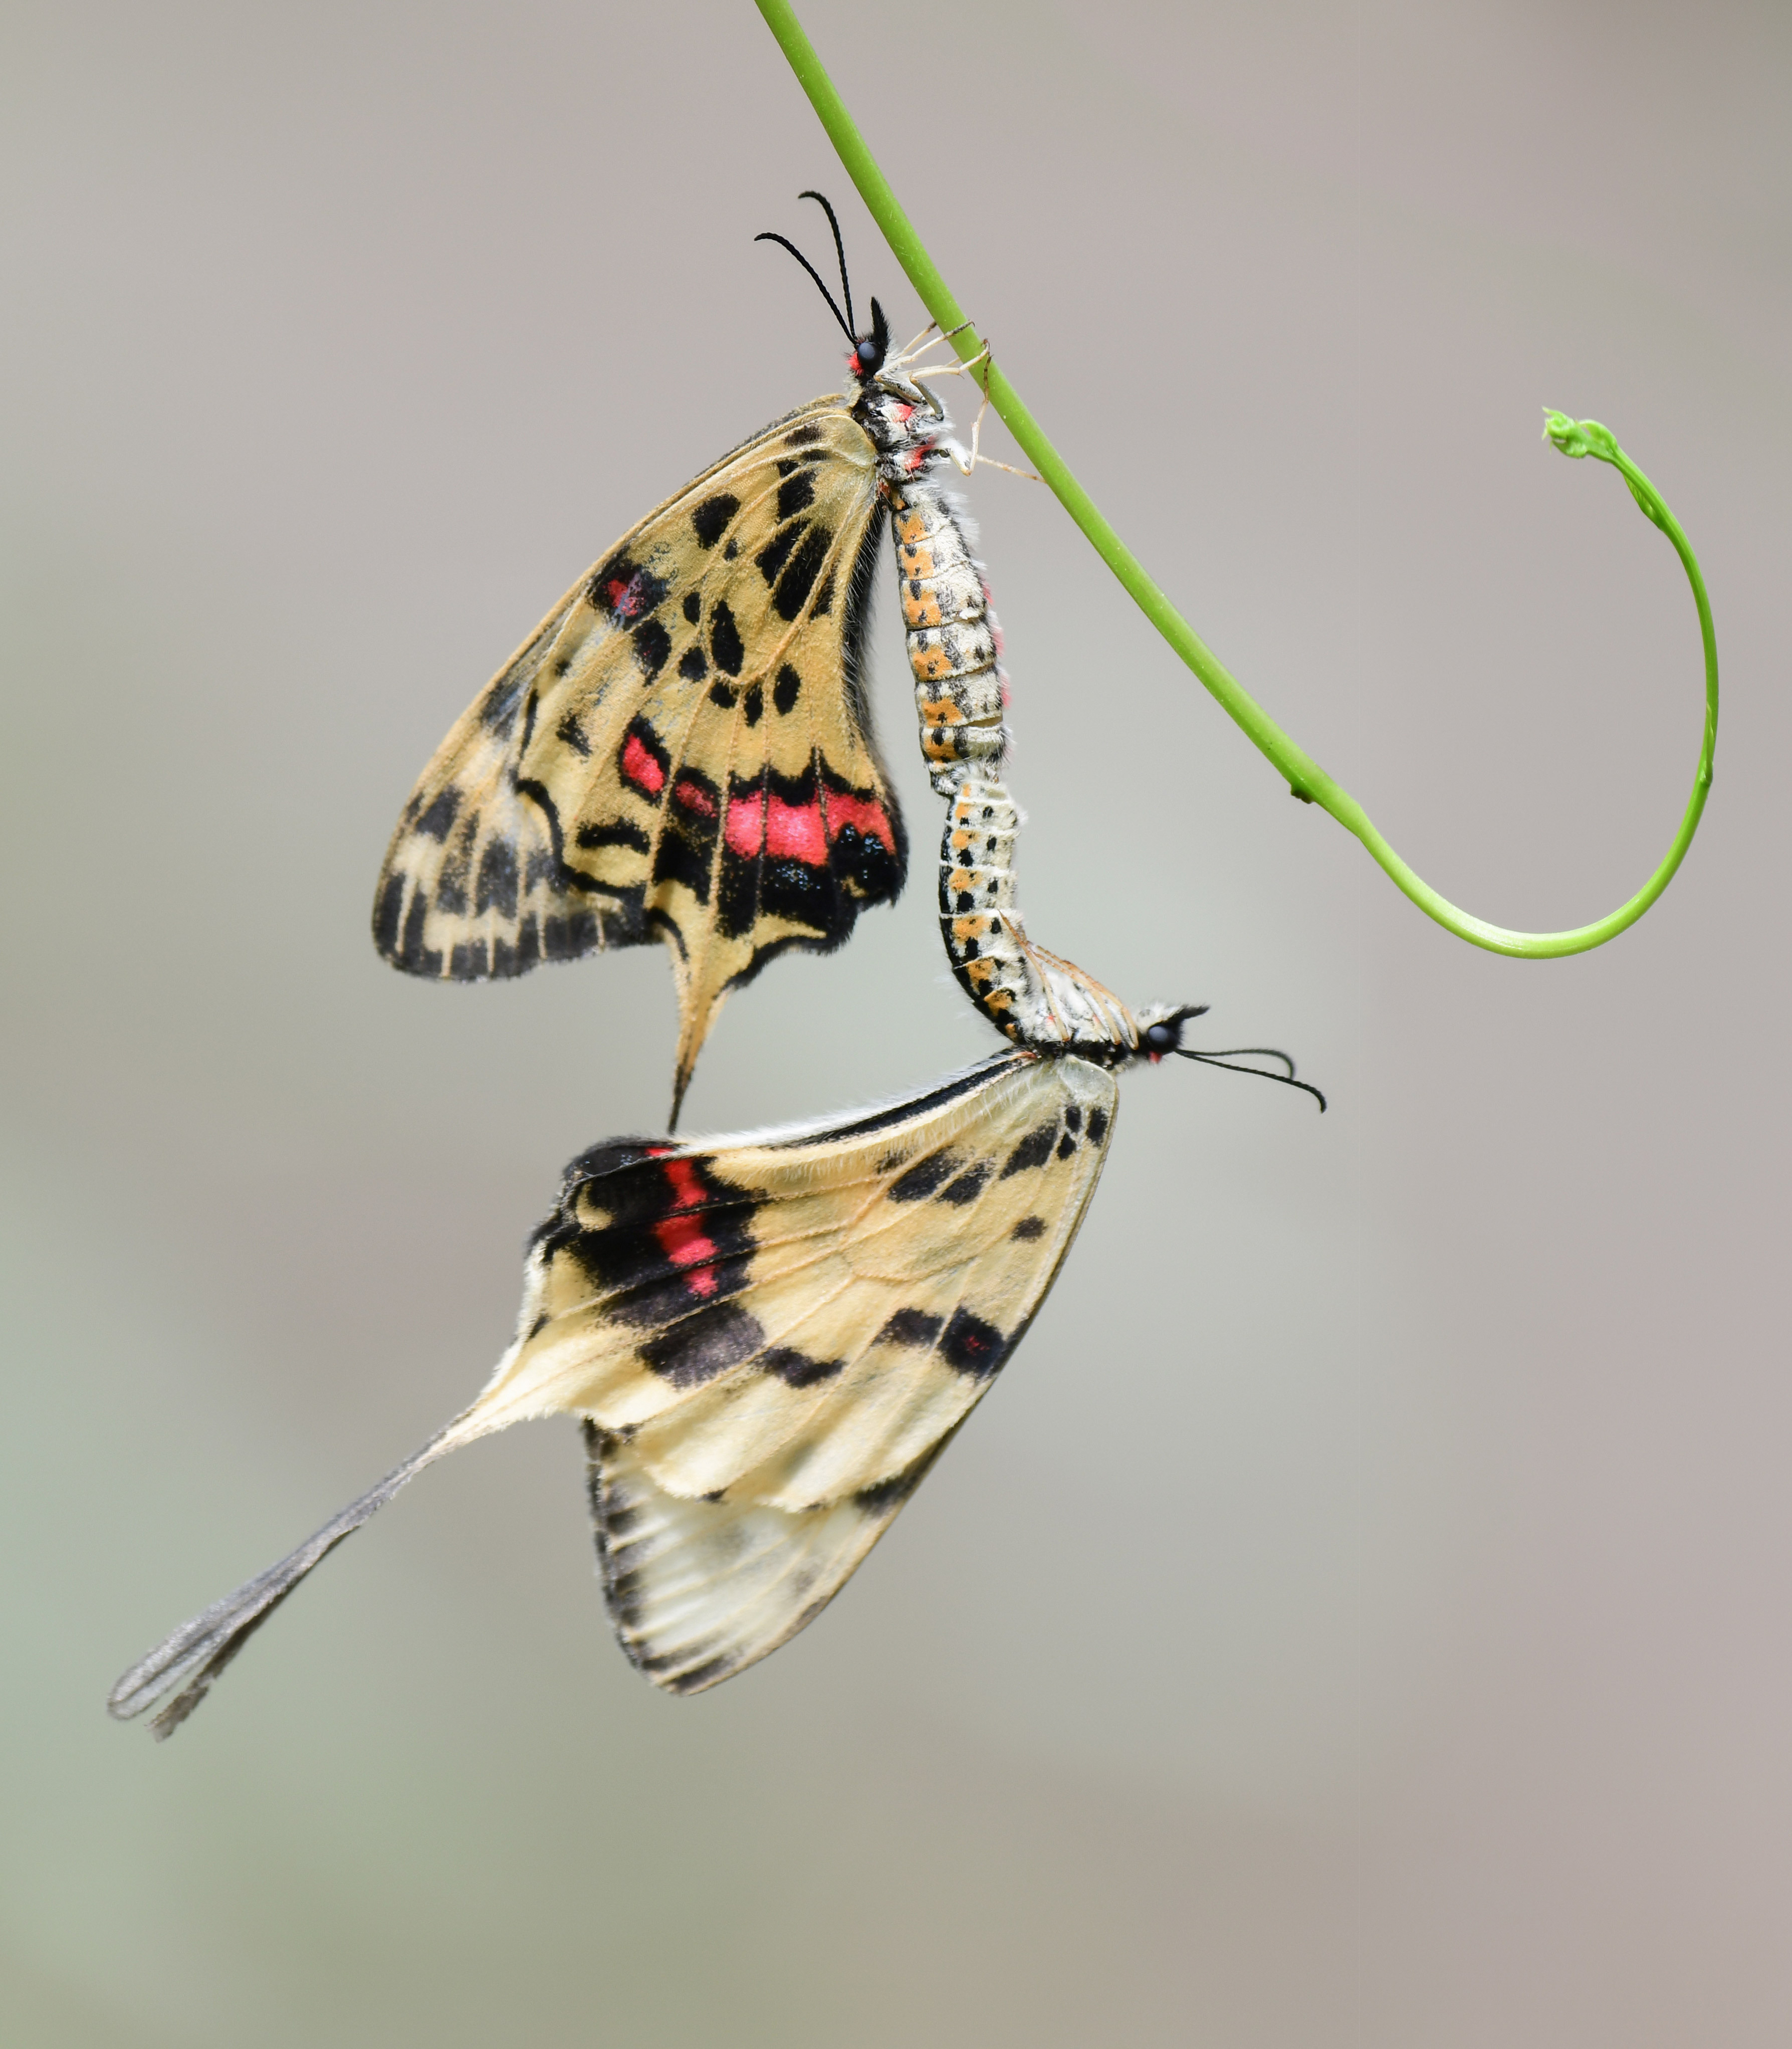 丝带凤蝶是我国非常珍贵的蝶种,在国内曾被列为14种珍贵蝴蝶种类之一